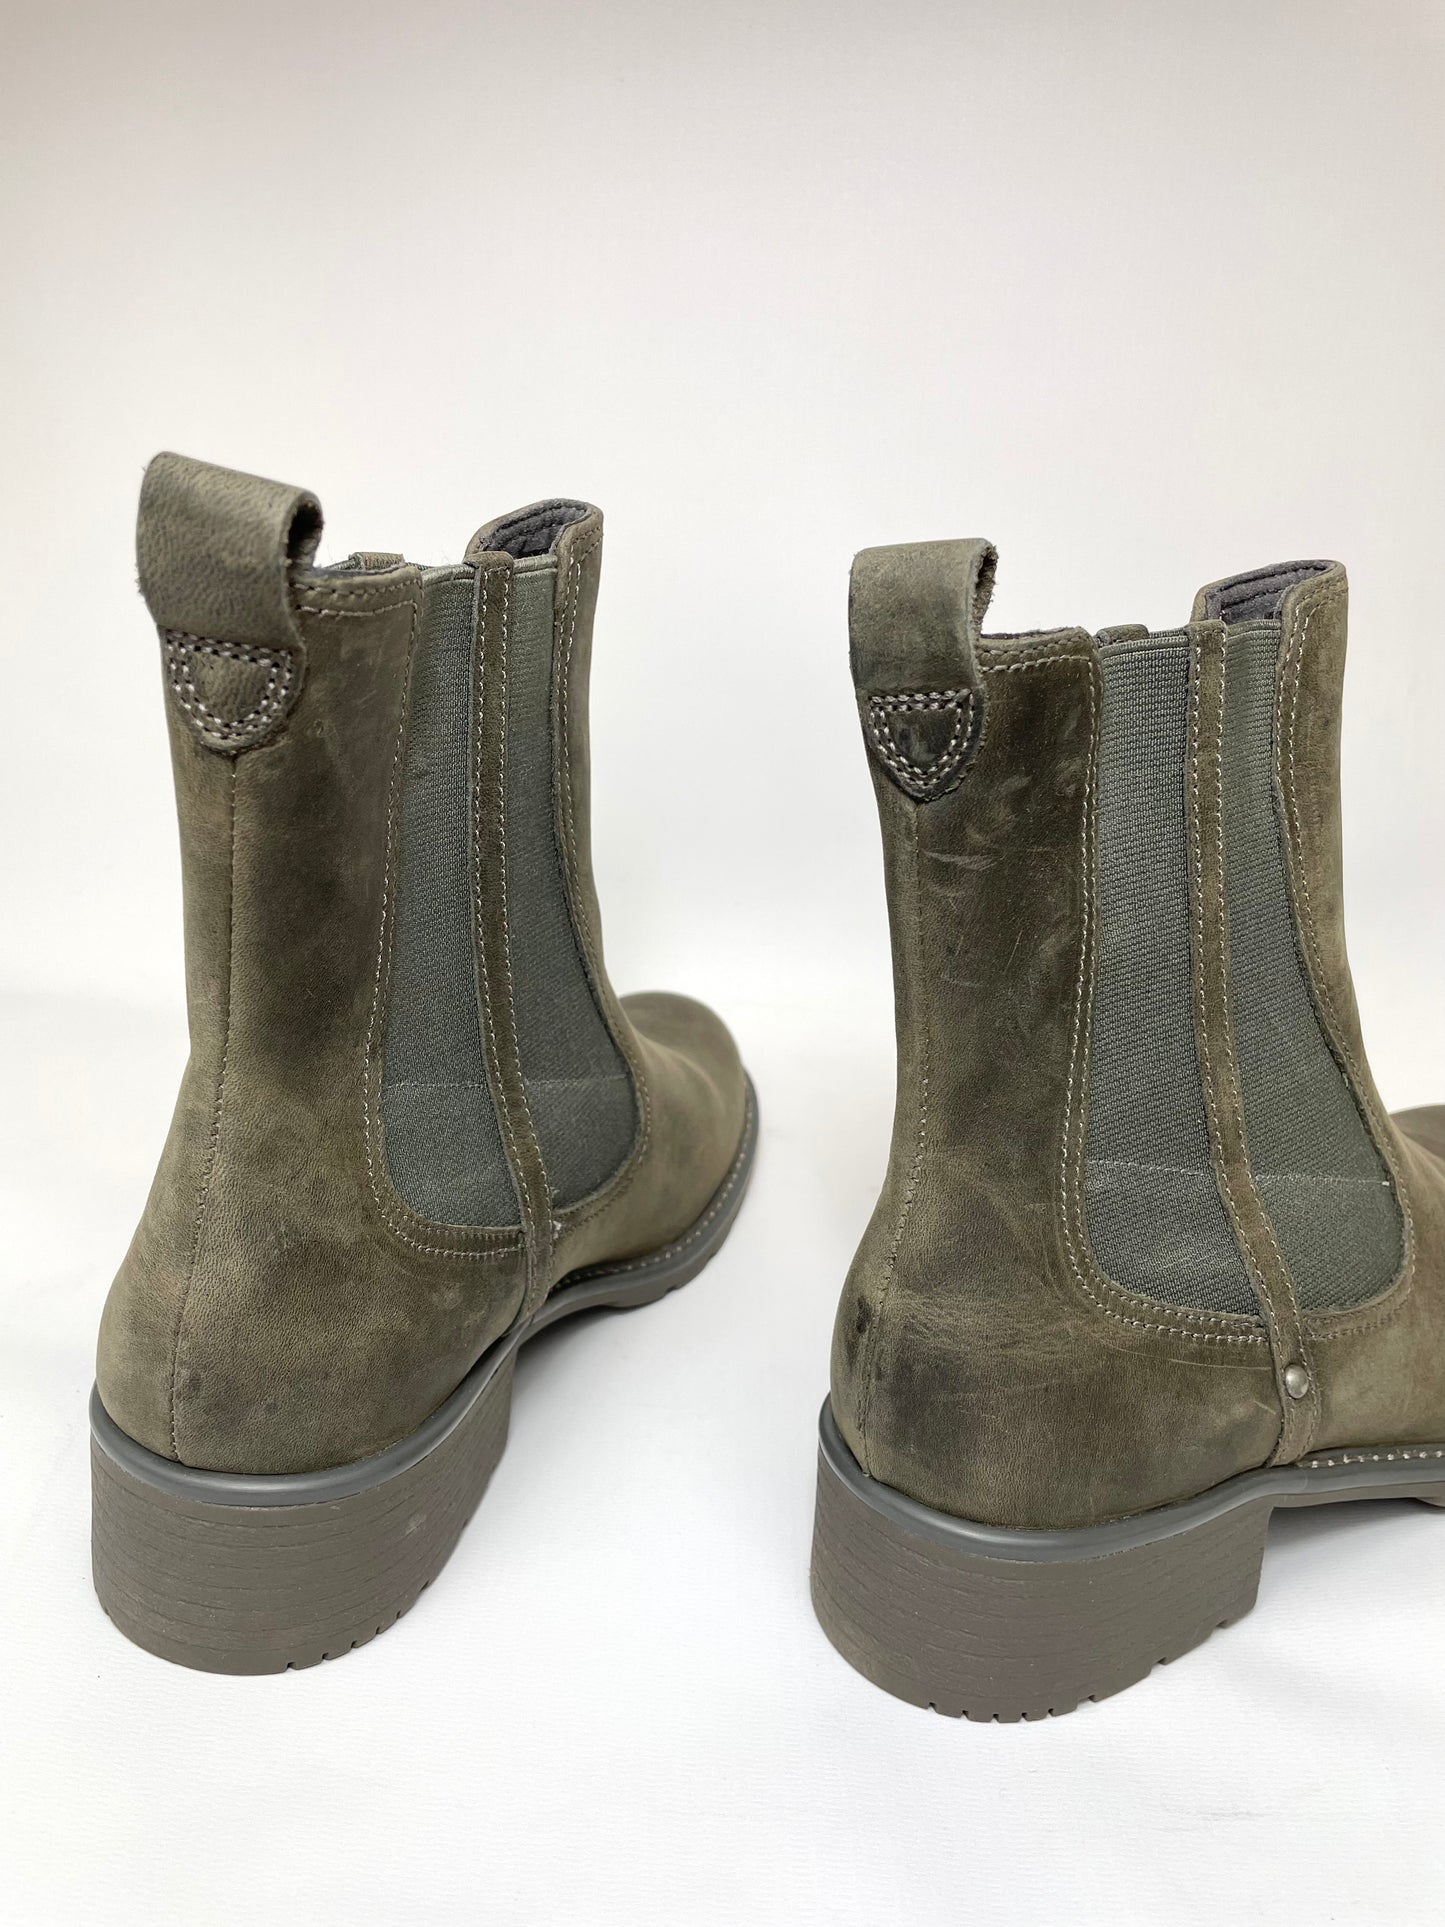 Clarks Womens Orinoco Club Nubuck Leather Ankle Boots Dark Grey